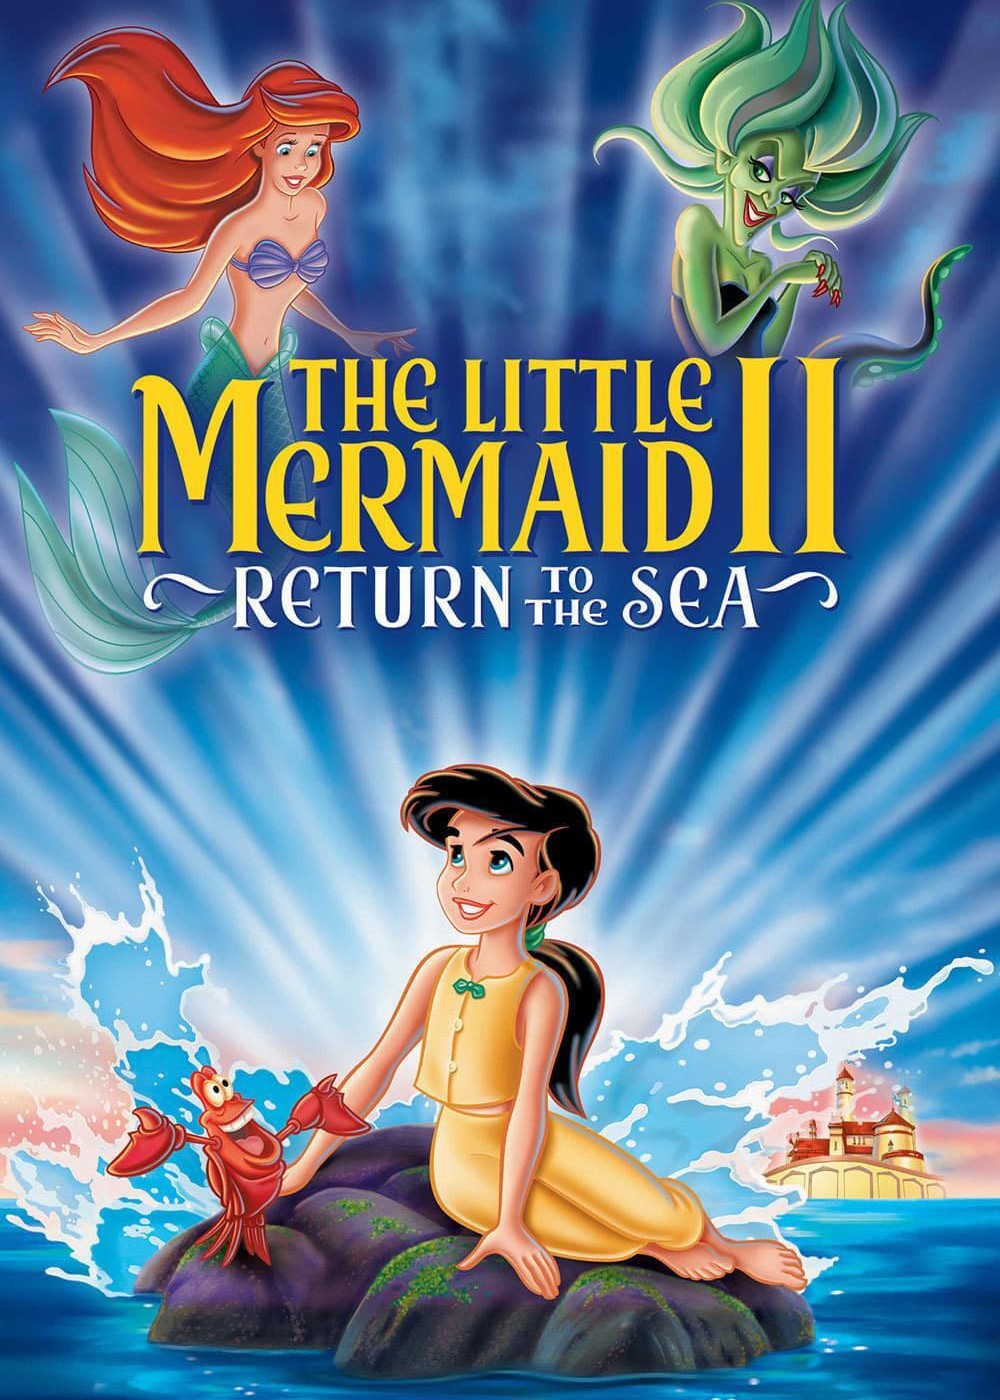 The Little Mermaid II: Return to the Sea | The Little Mermaid II: Return to the Sea (2000)